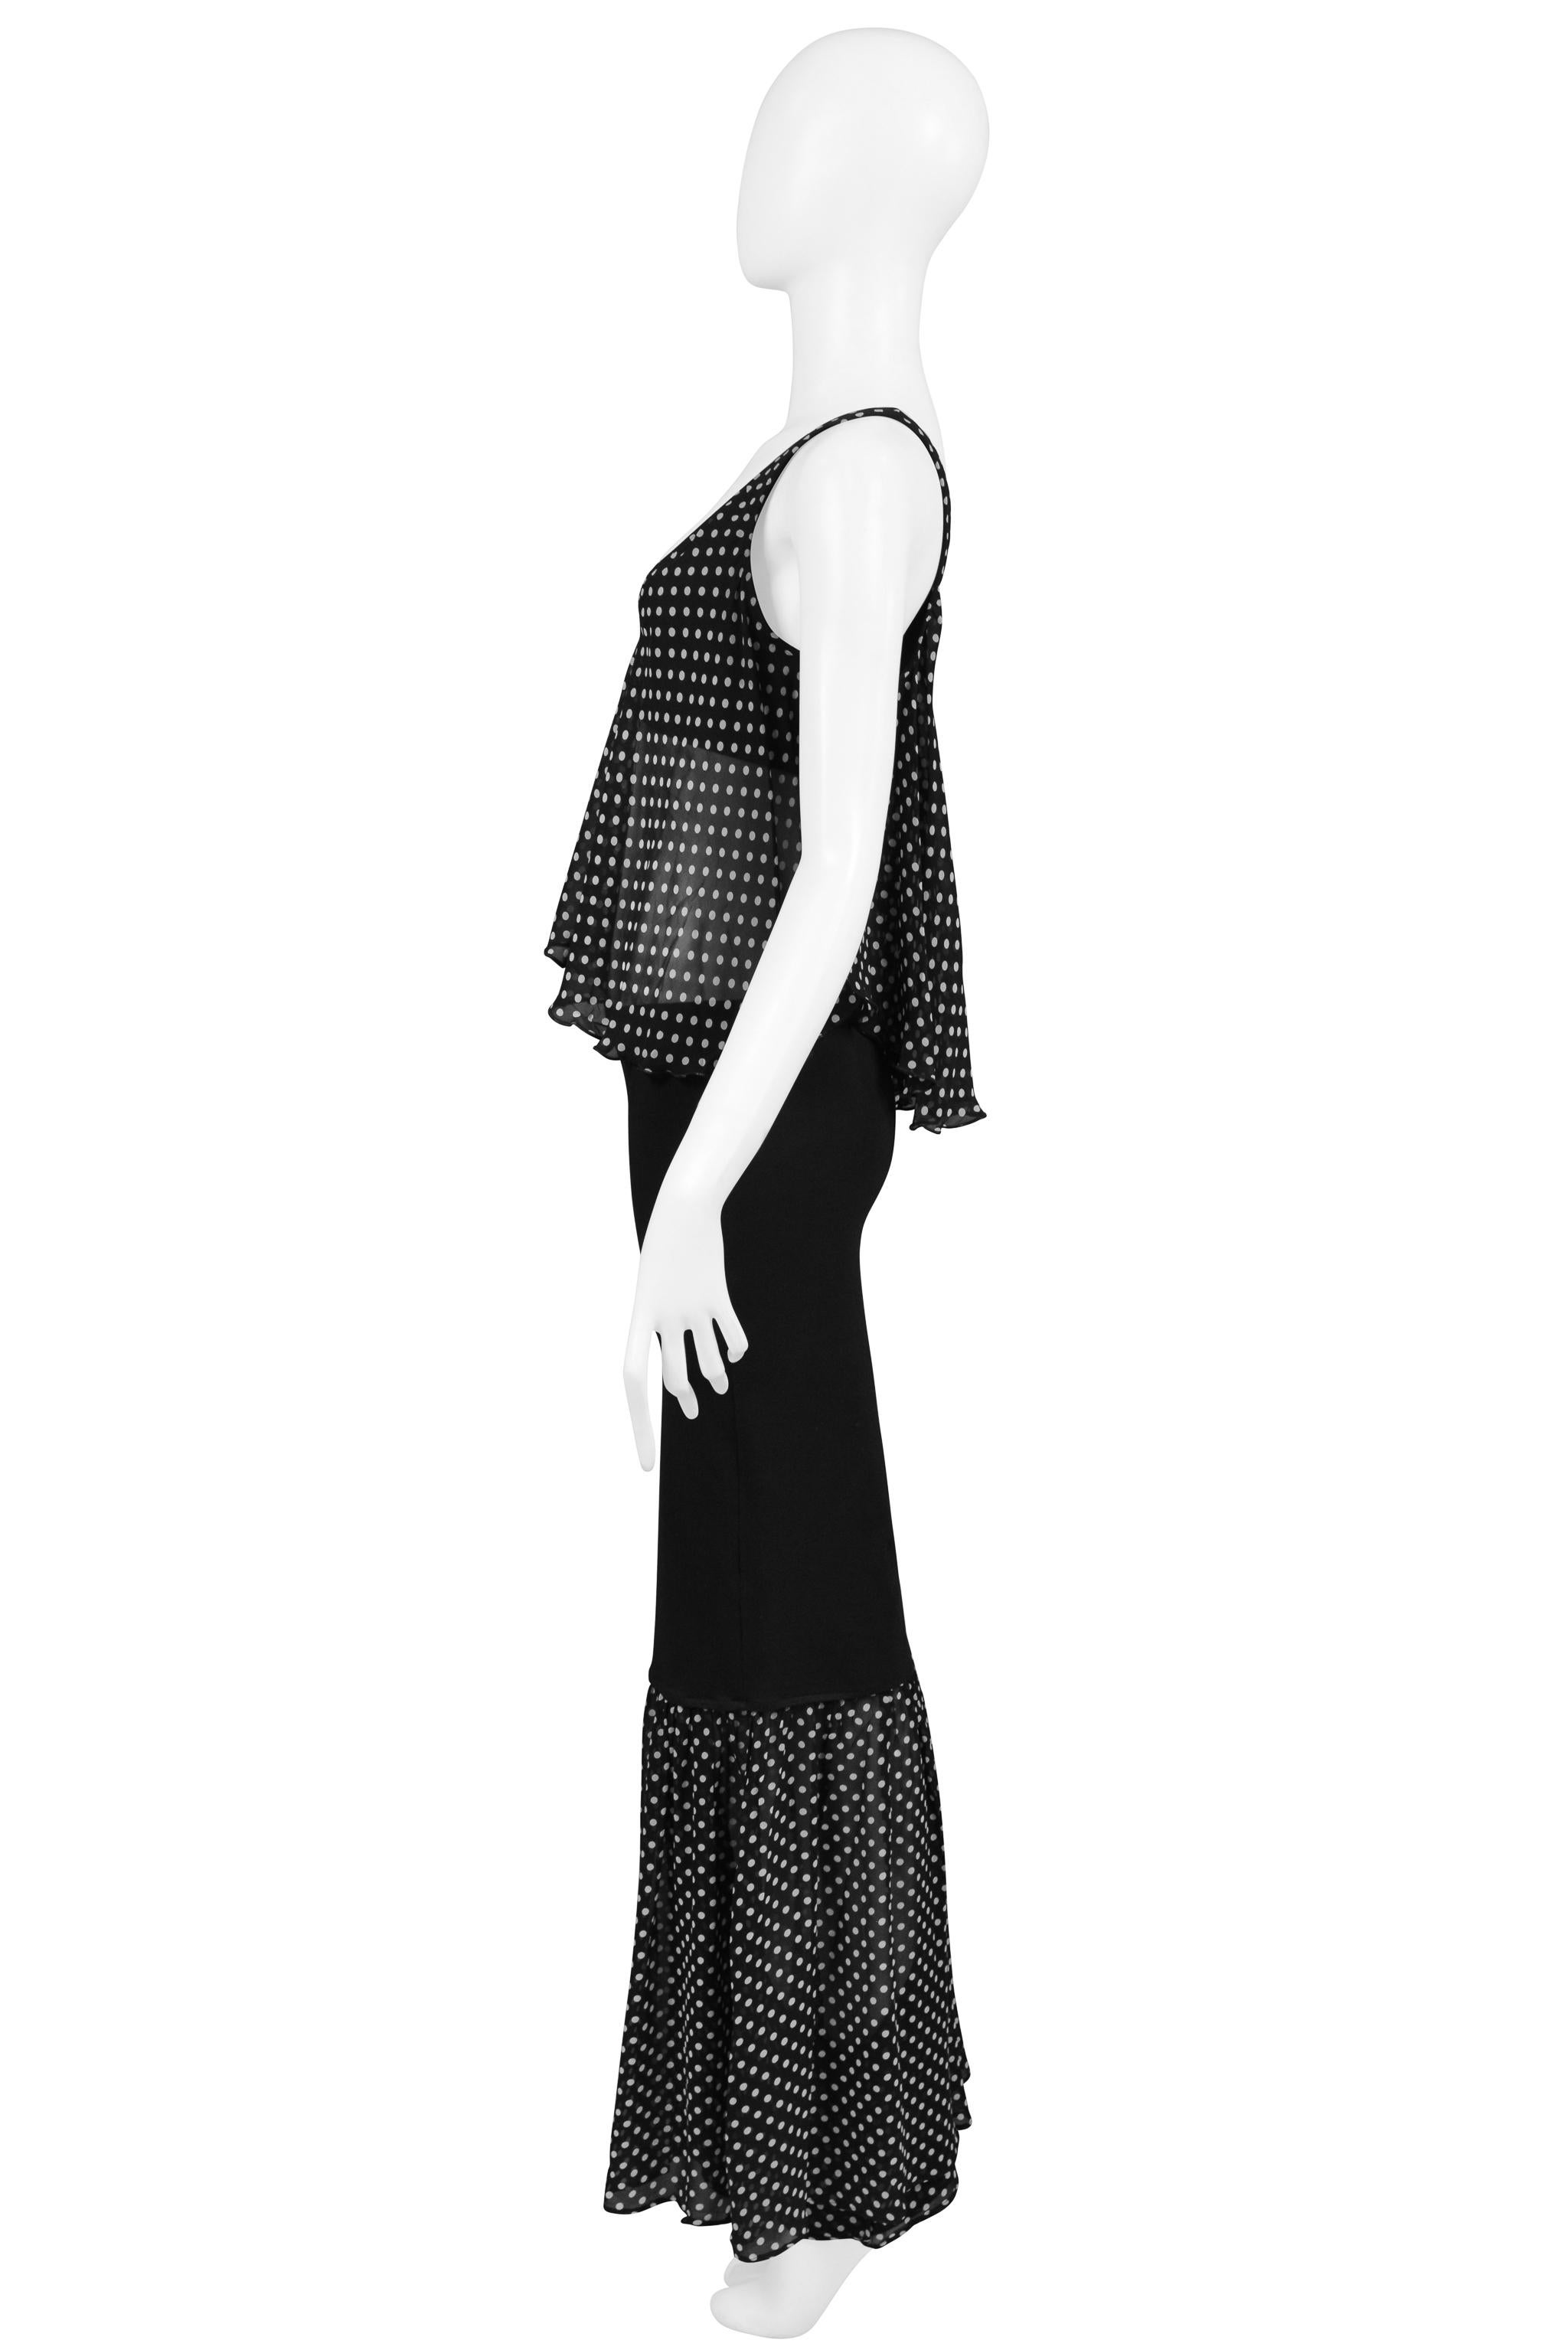 Dolce & Gabbana Black And White Polka Dot Skirt Ensemble For Sale 2